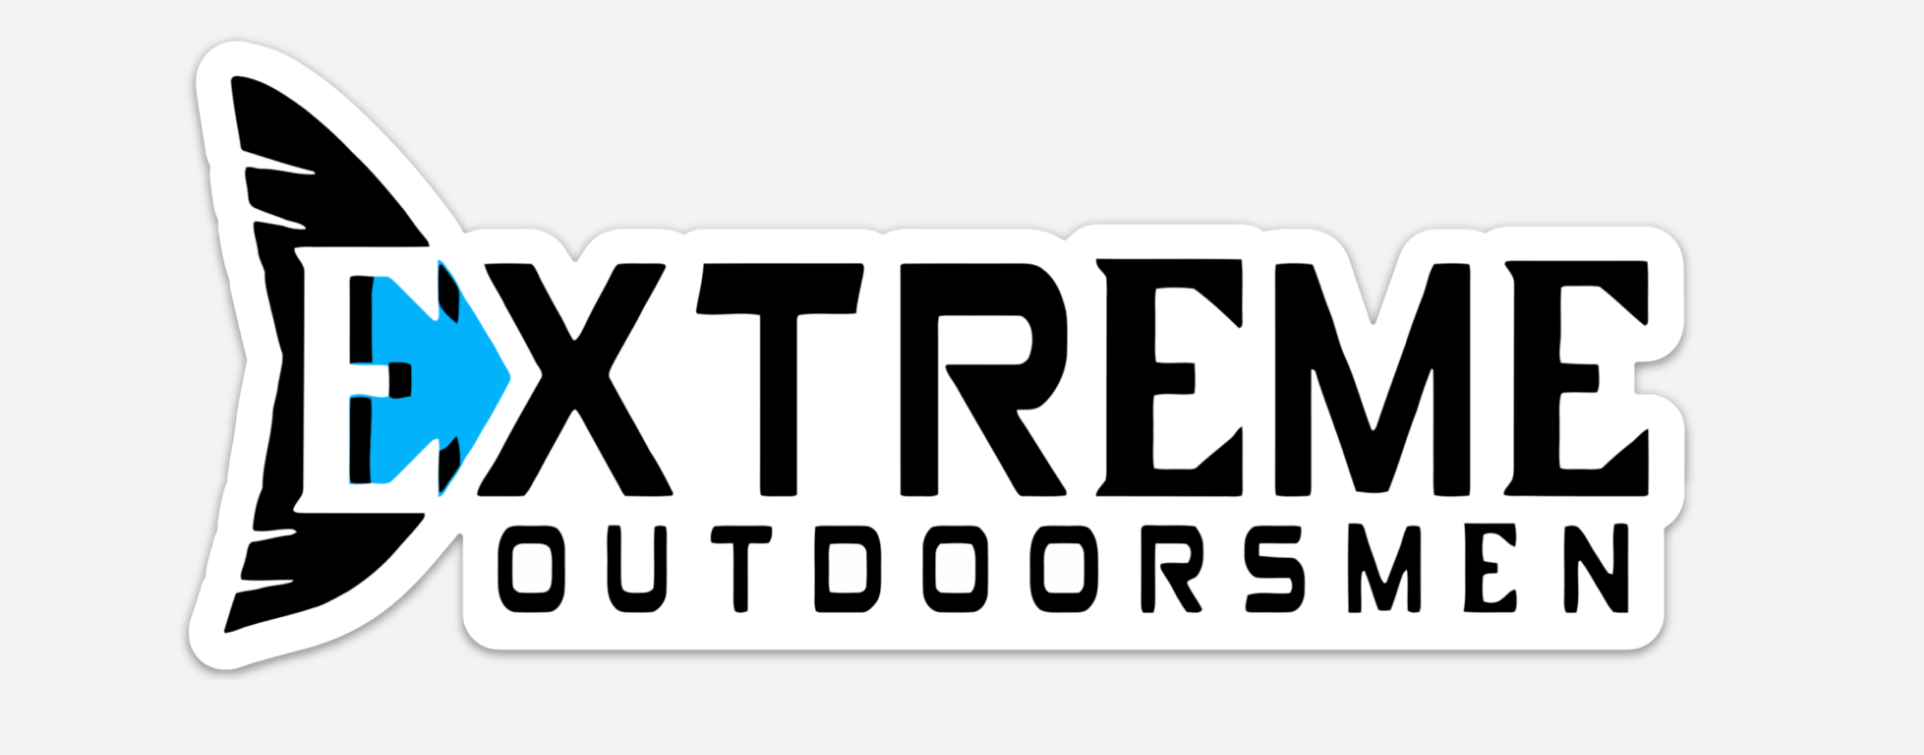 Extreme.Outdoorsmen Sticker